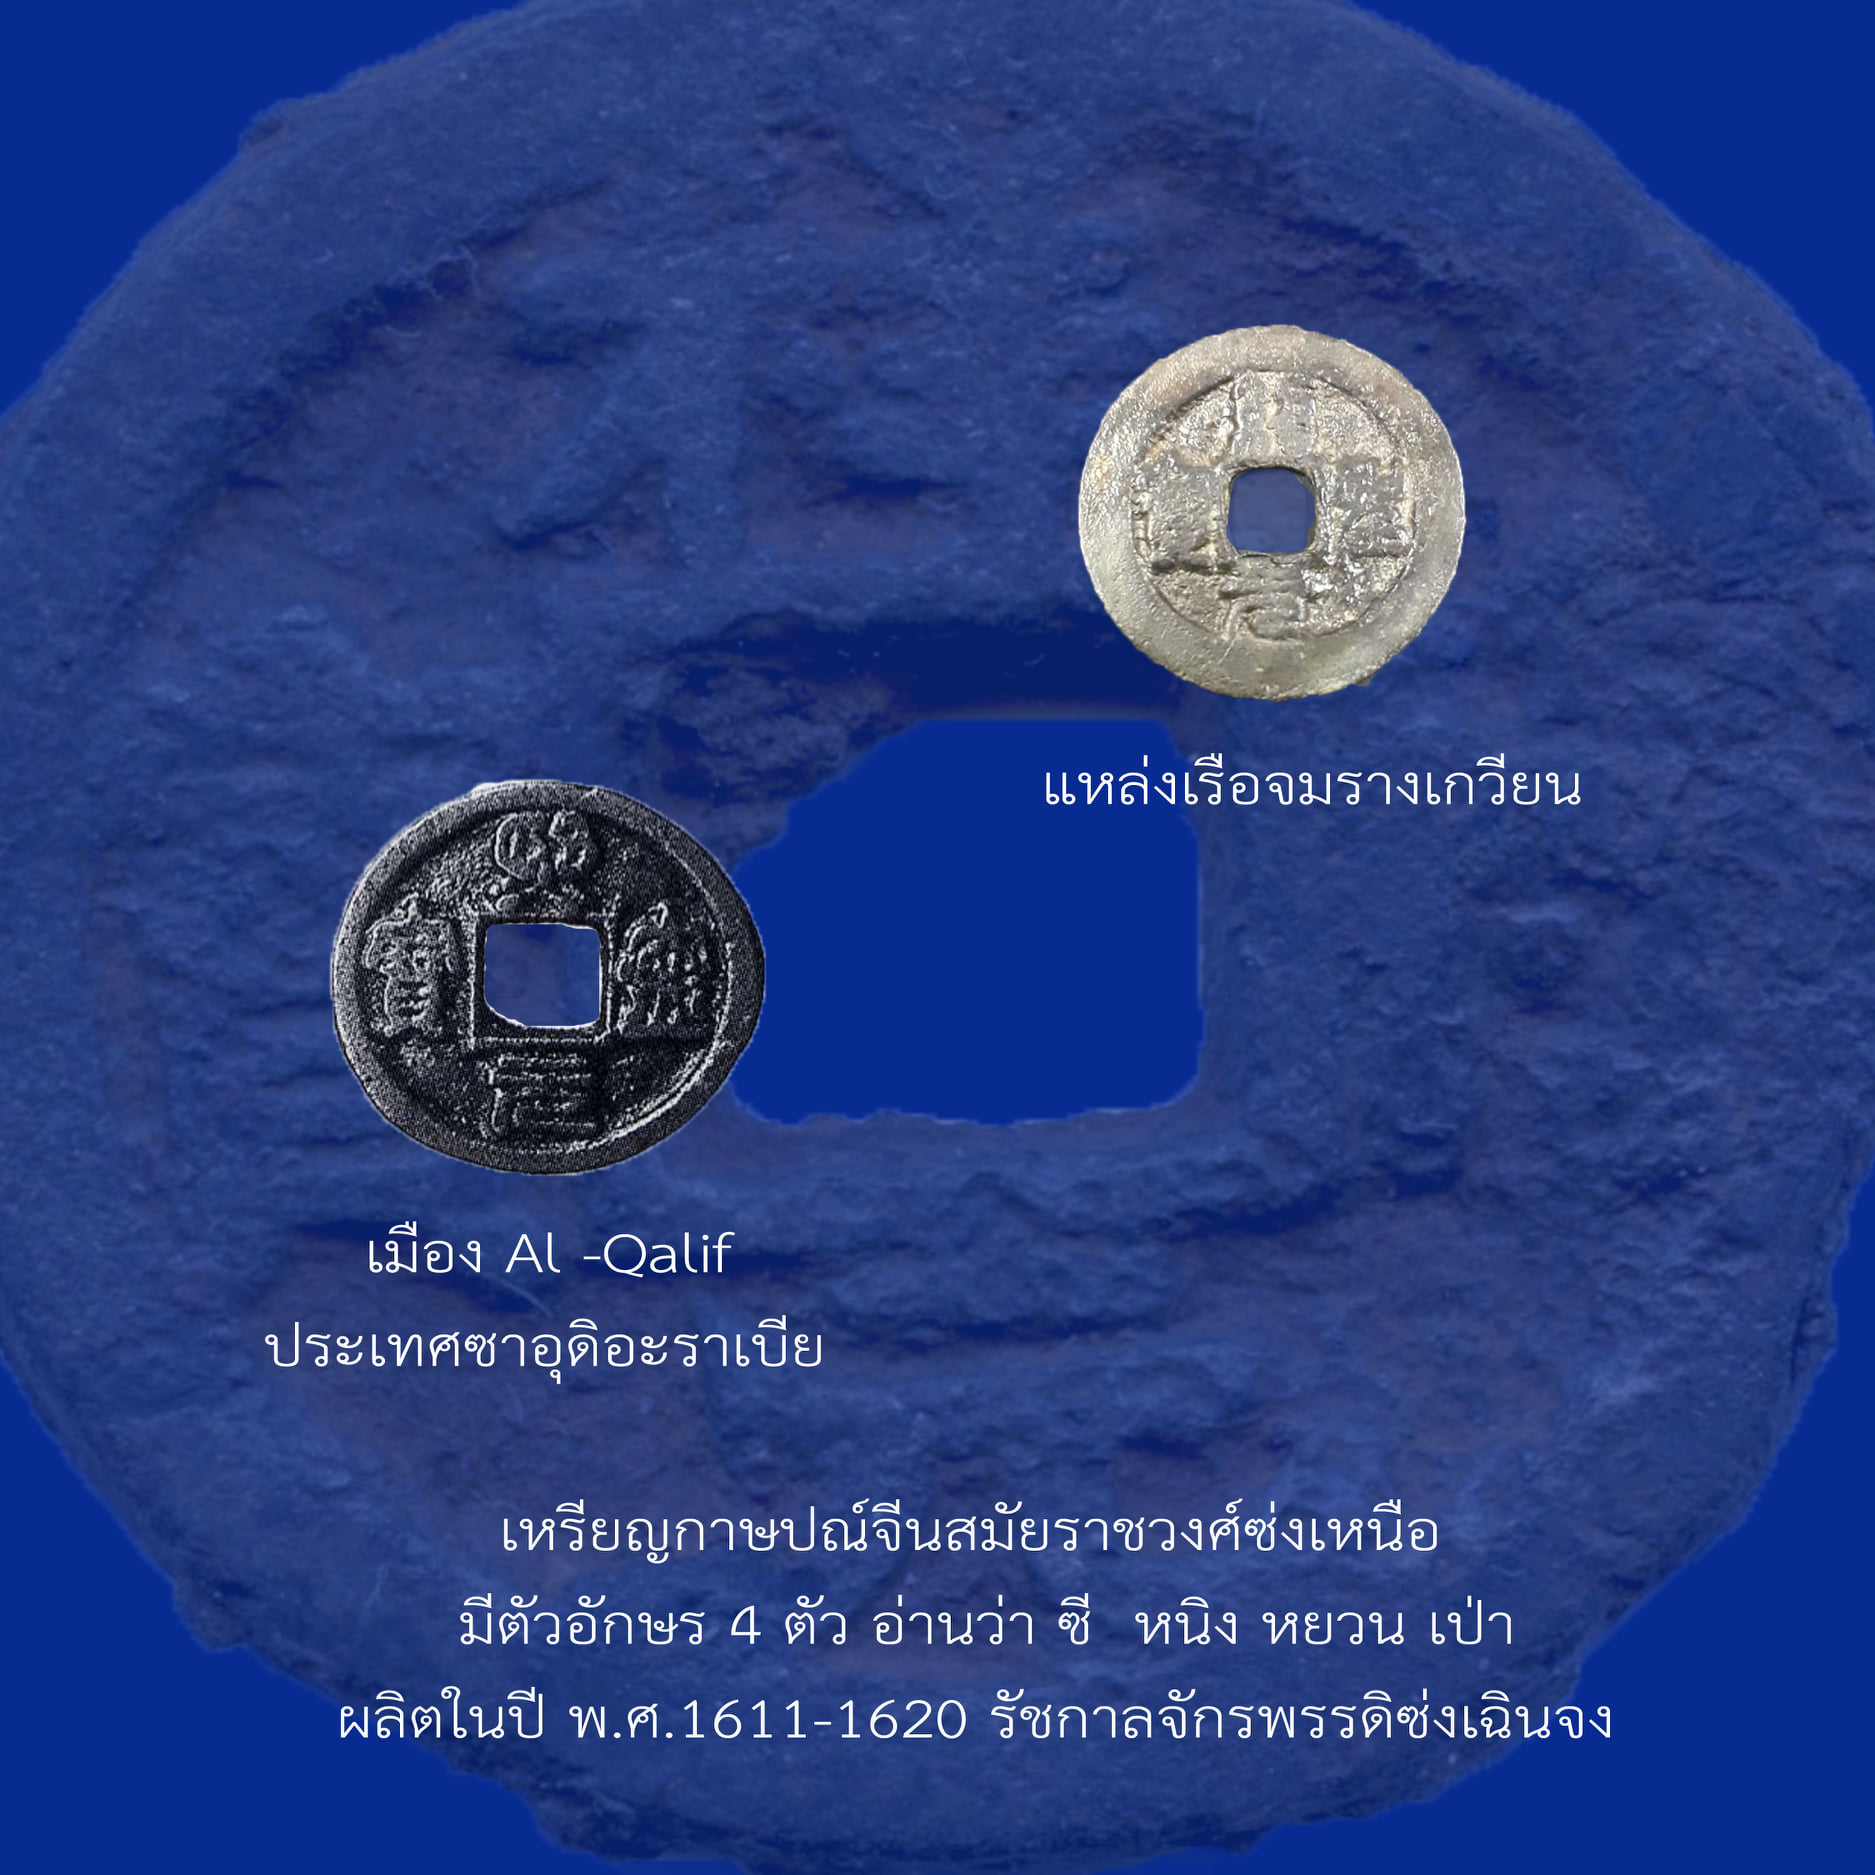 เรื่อง เหรียญกษาปณ์จีนที่พบในแหล่งเรือจม ตอนที่ 2 เหรียญสมัยราชวงศ์ซ่ง